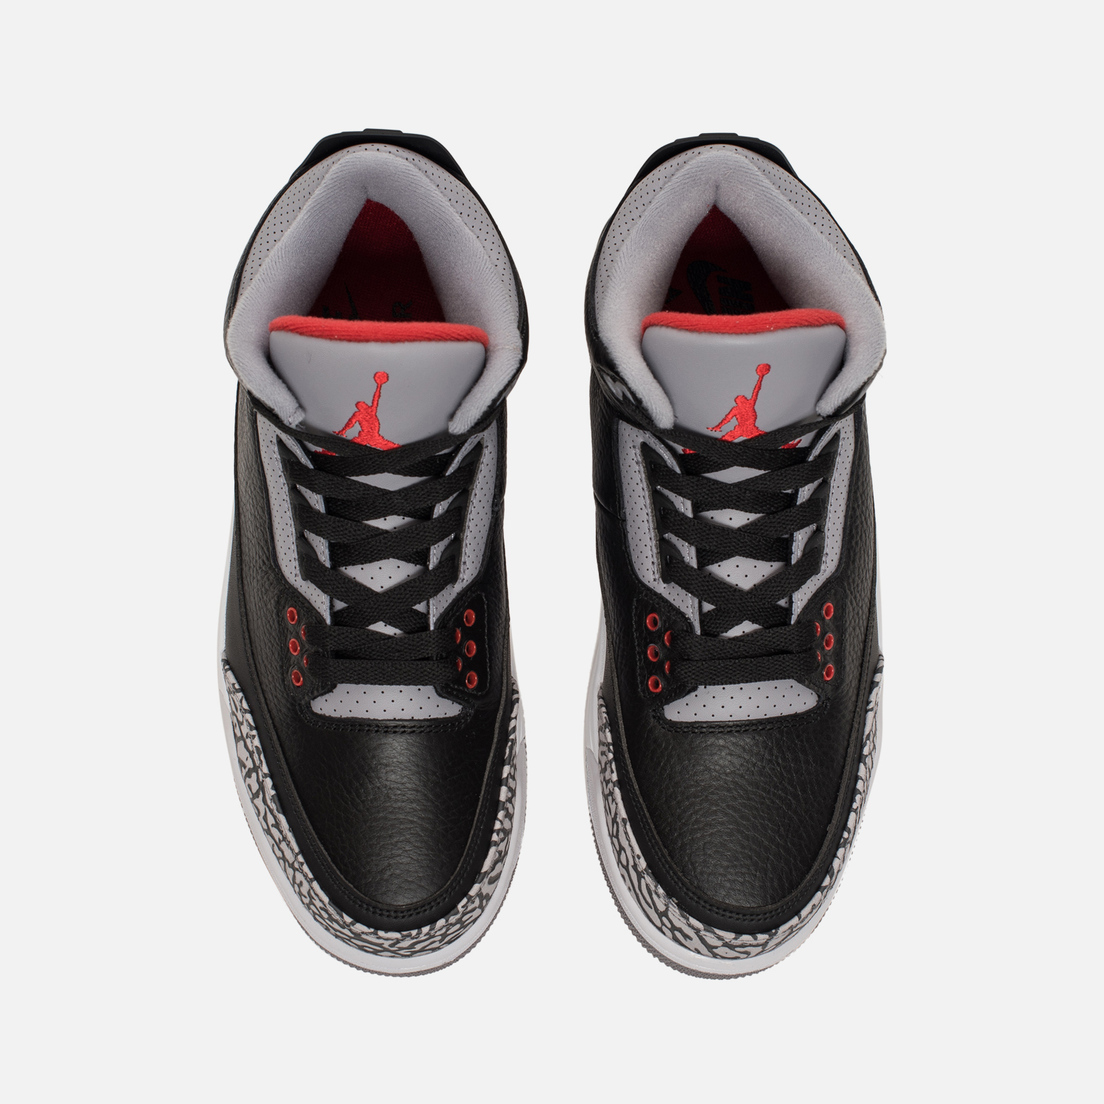 Jordan Подростковые кроссовки Air Jordan 3 Retro OG GS